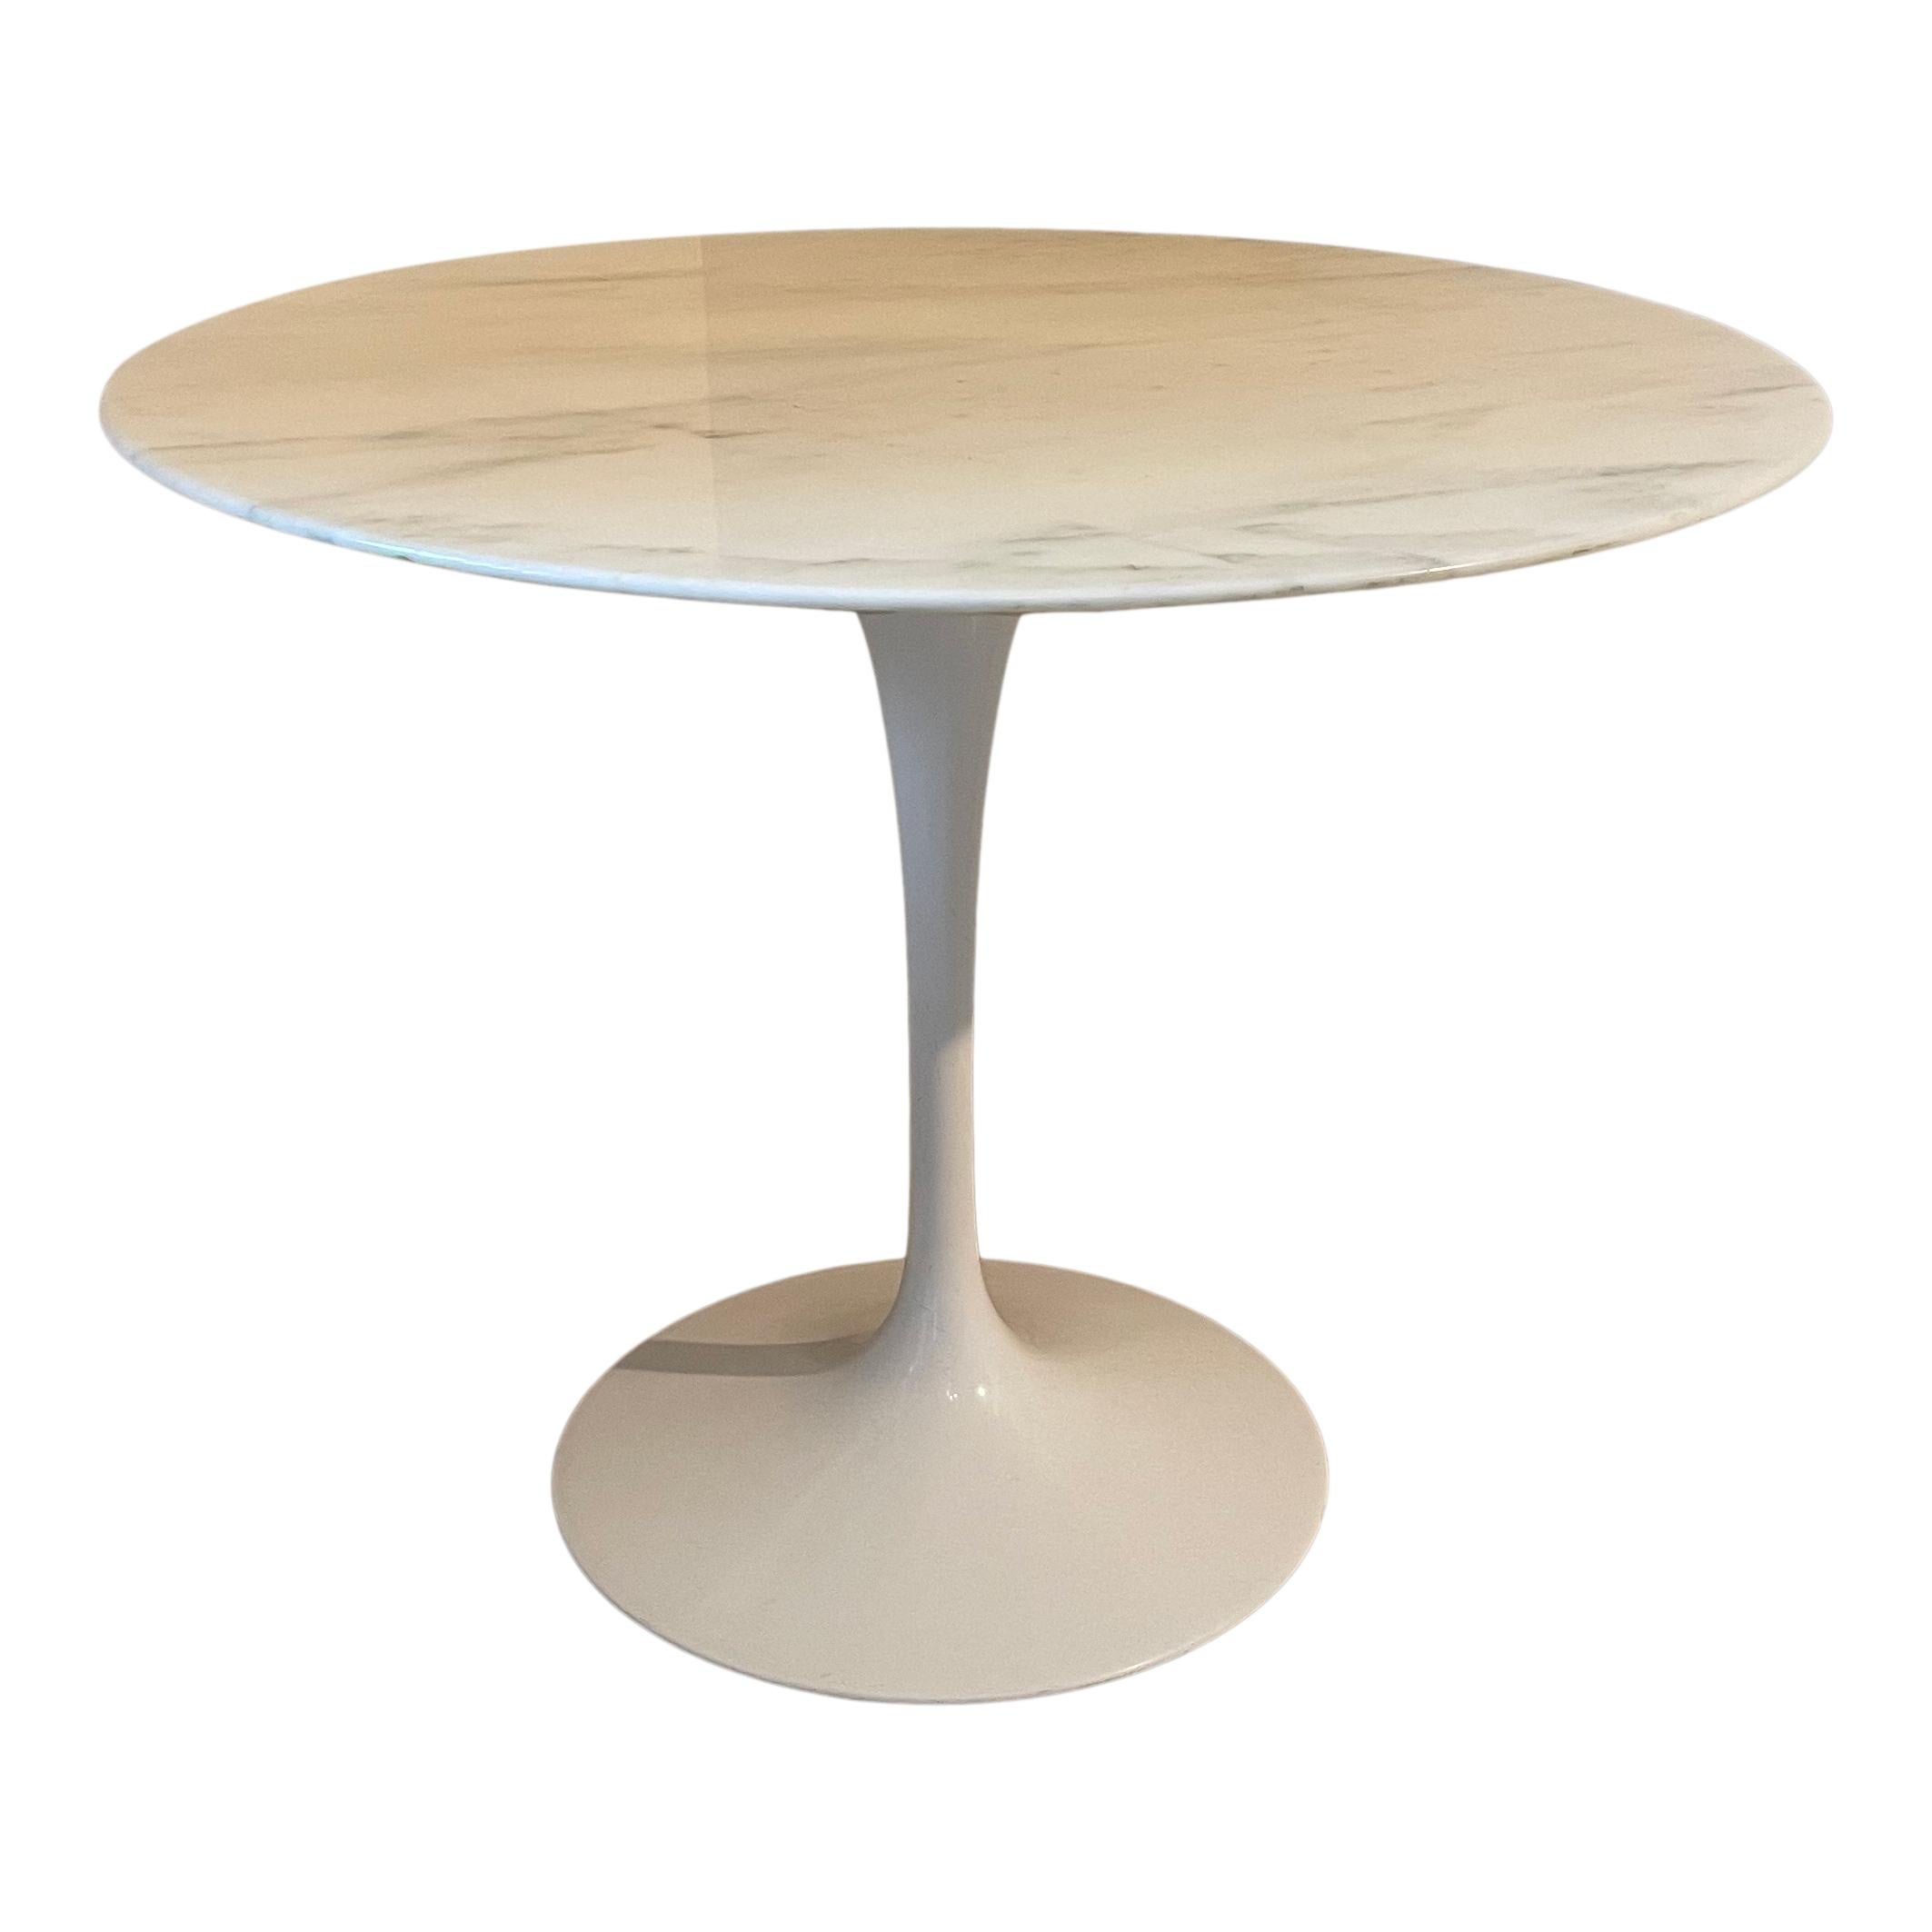 Table de salle à manger ronde Tulip conçue par Eero Saarinen en 1957 et fabriquée par Knoll en 1967.

Composé d'un socle laqué blanc et d'un plateau de table en marbre de Carrare Arabescato.

Excellent état vintage.

La table Tulip du designer Eero